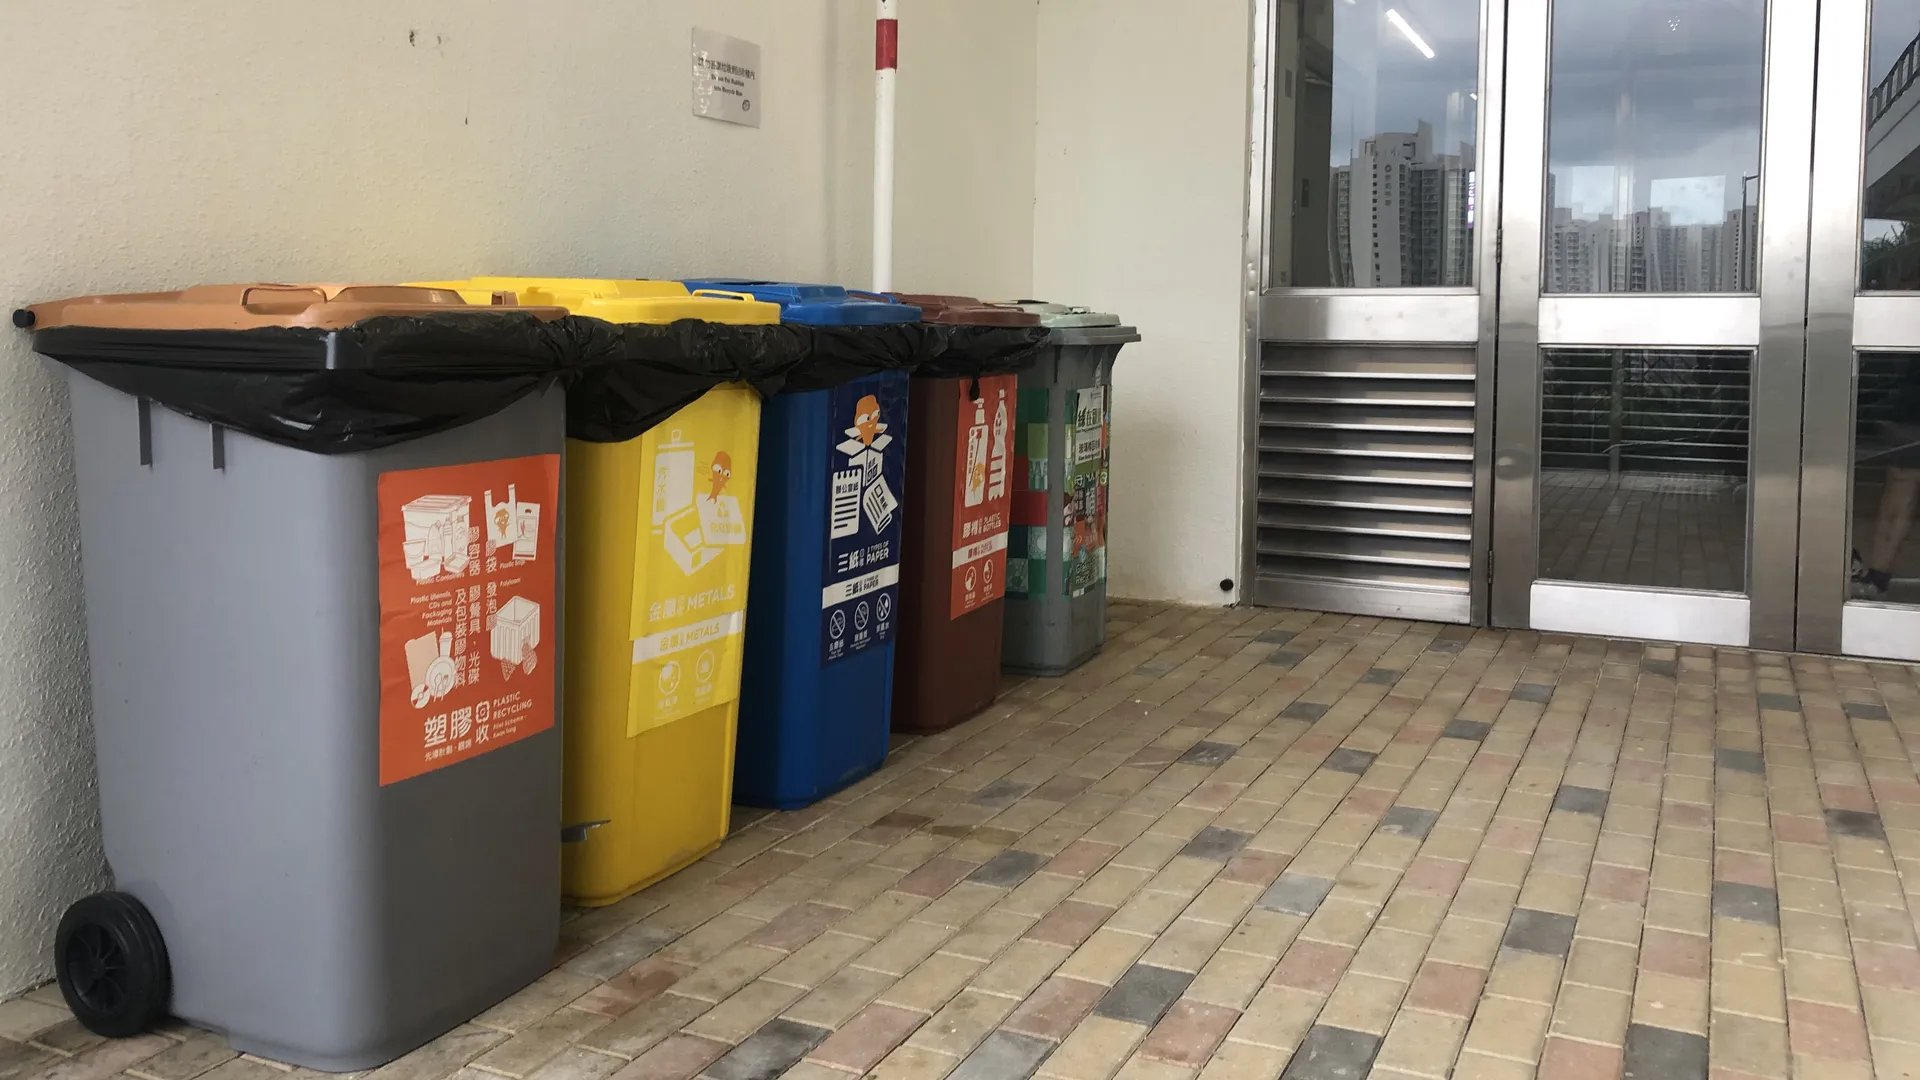 住宅樓宇的廢物分類回收桶